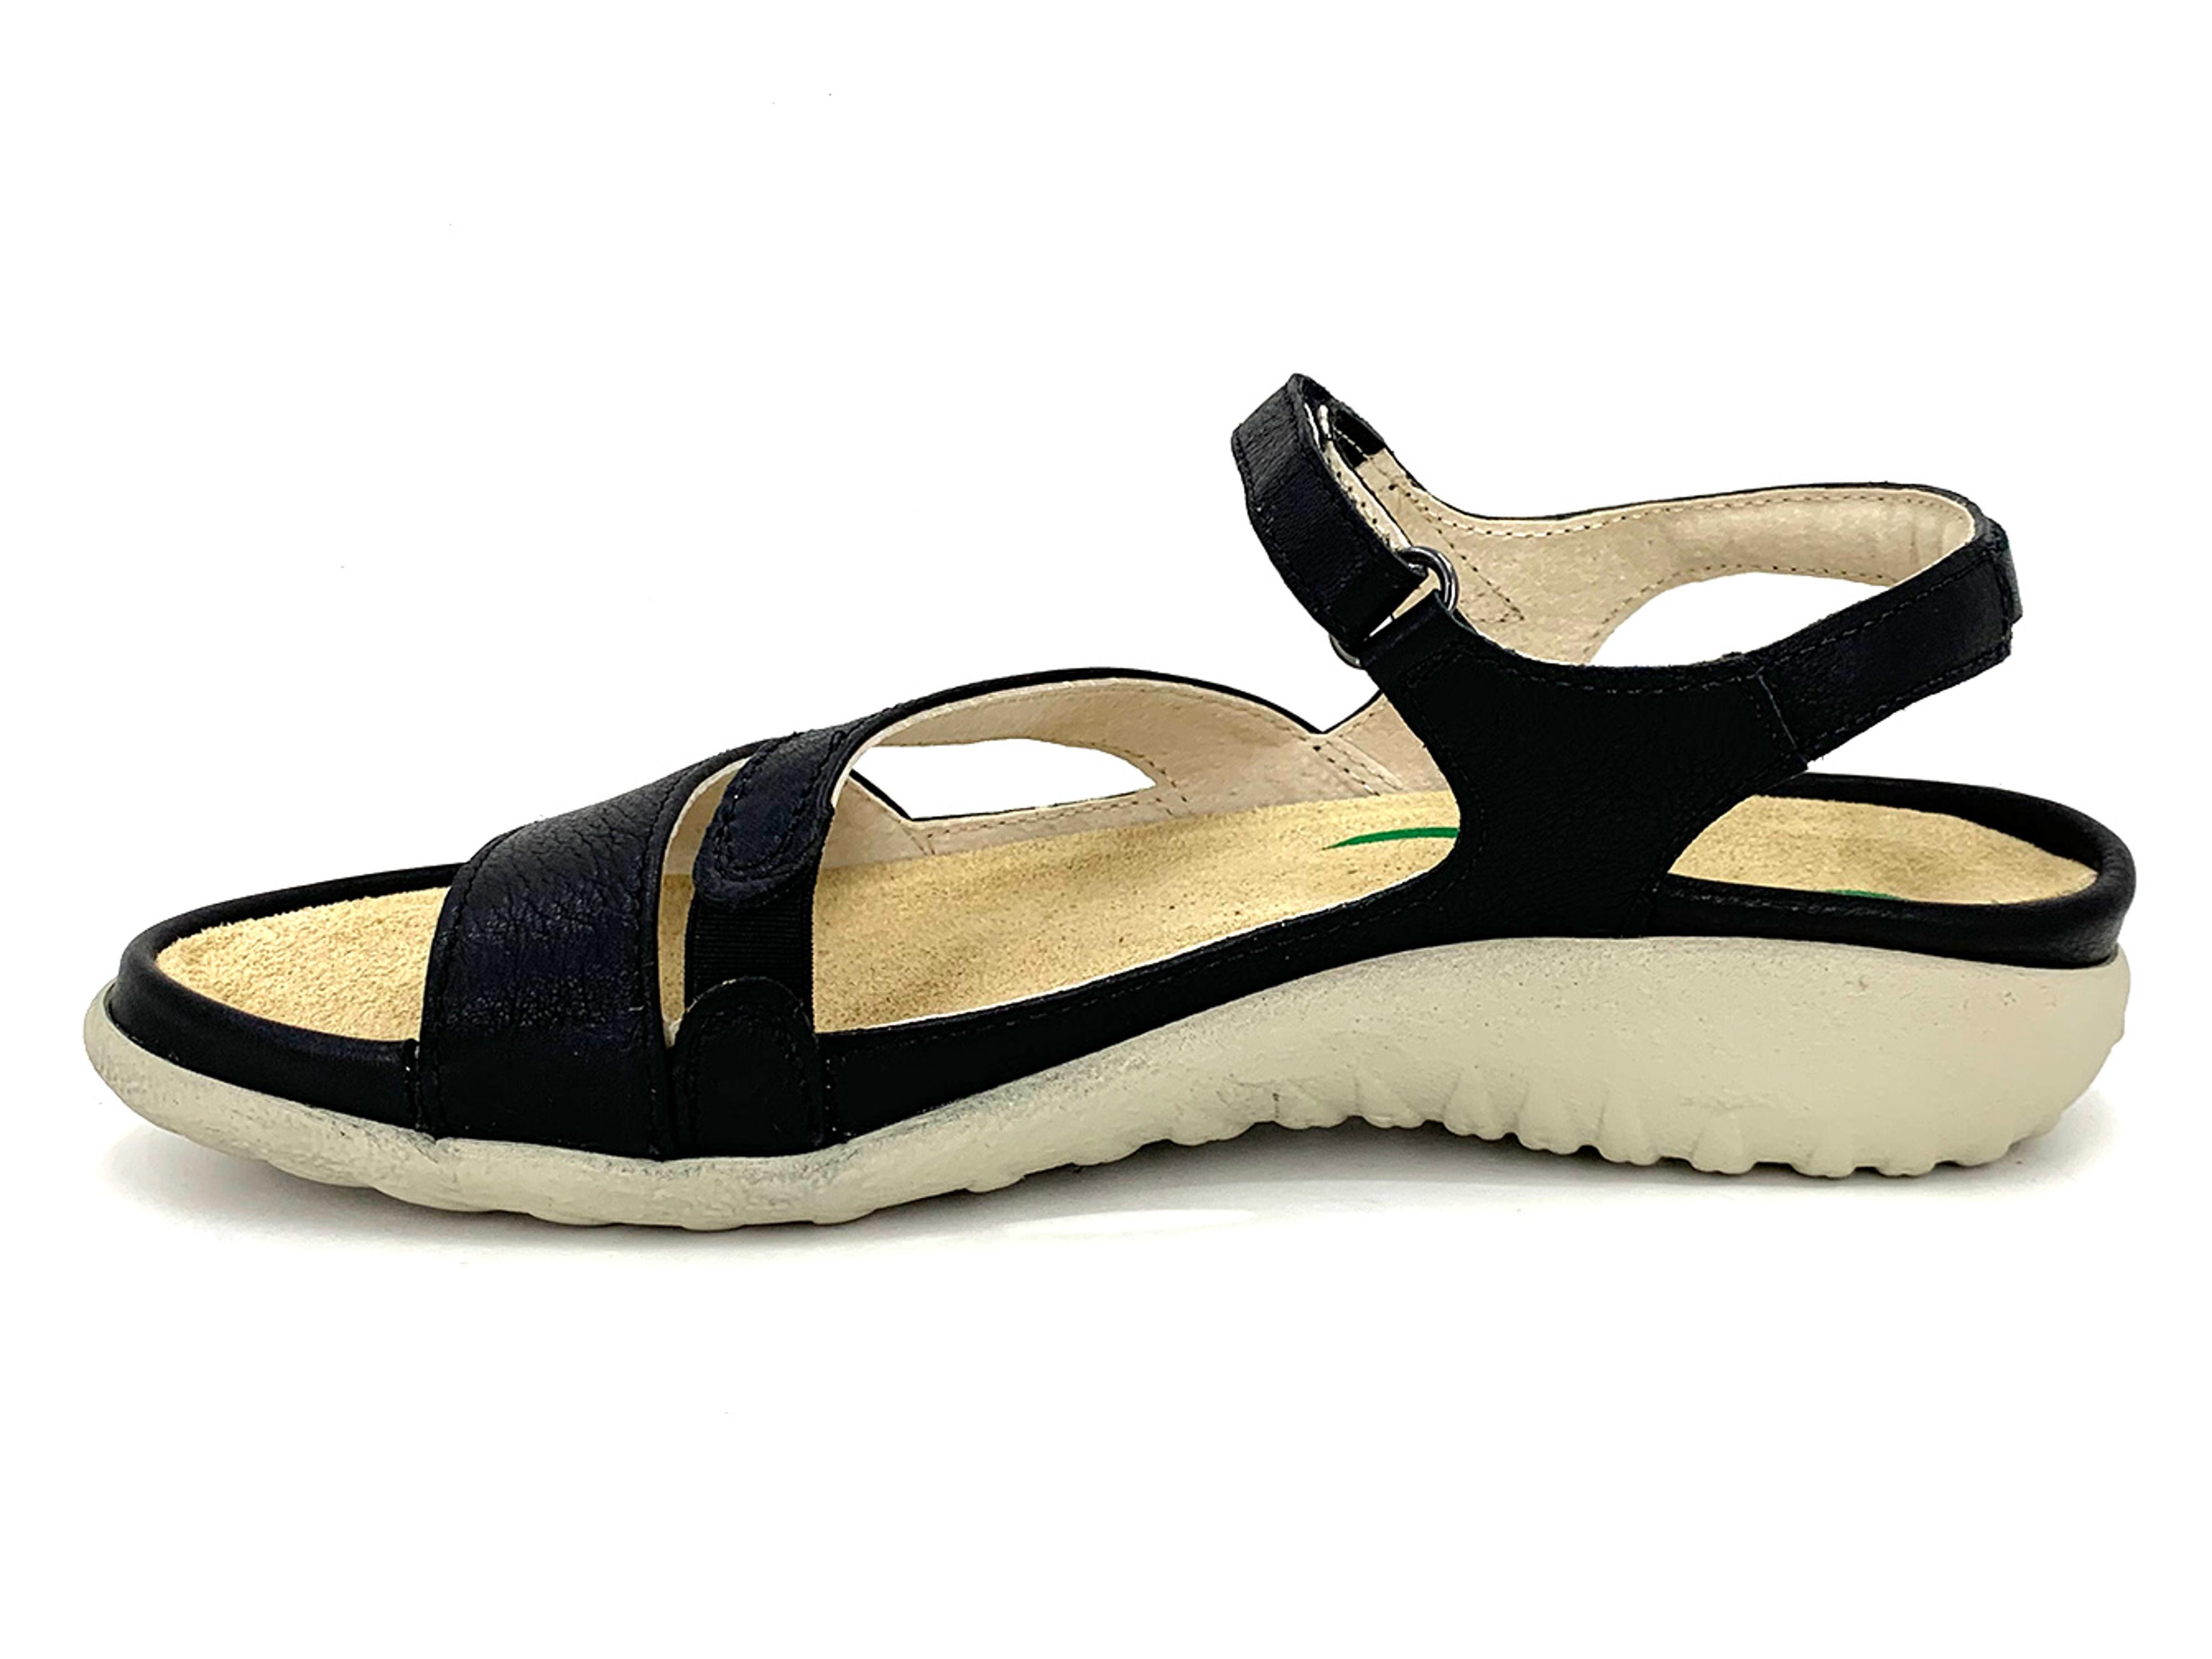 Naot Etera Women's Sandal Black : The Shoe Spa